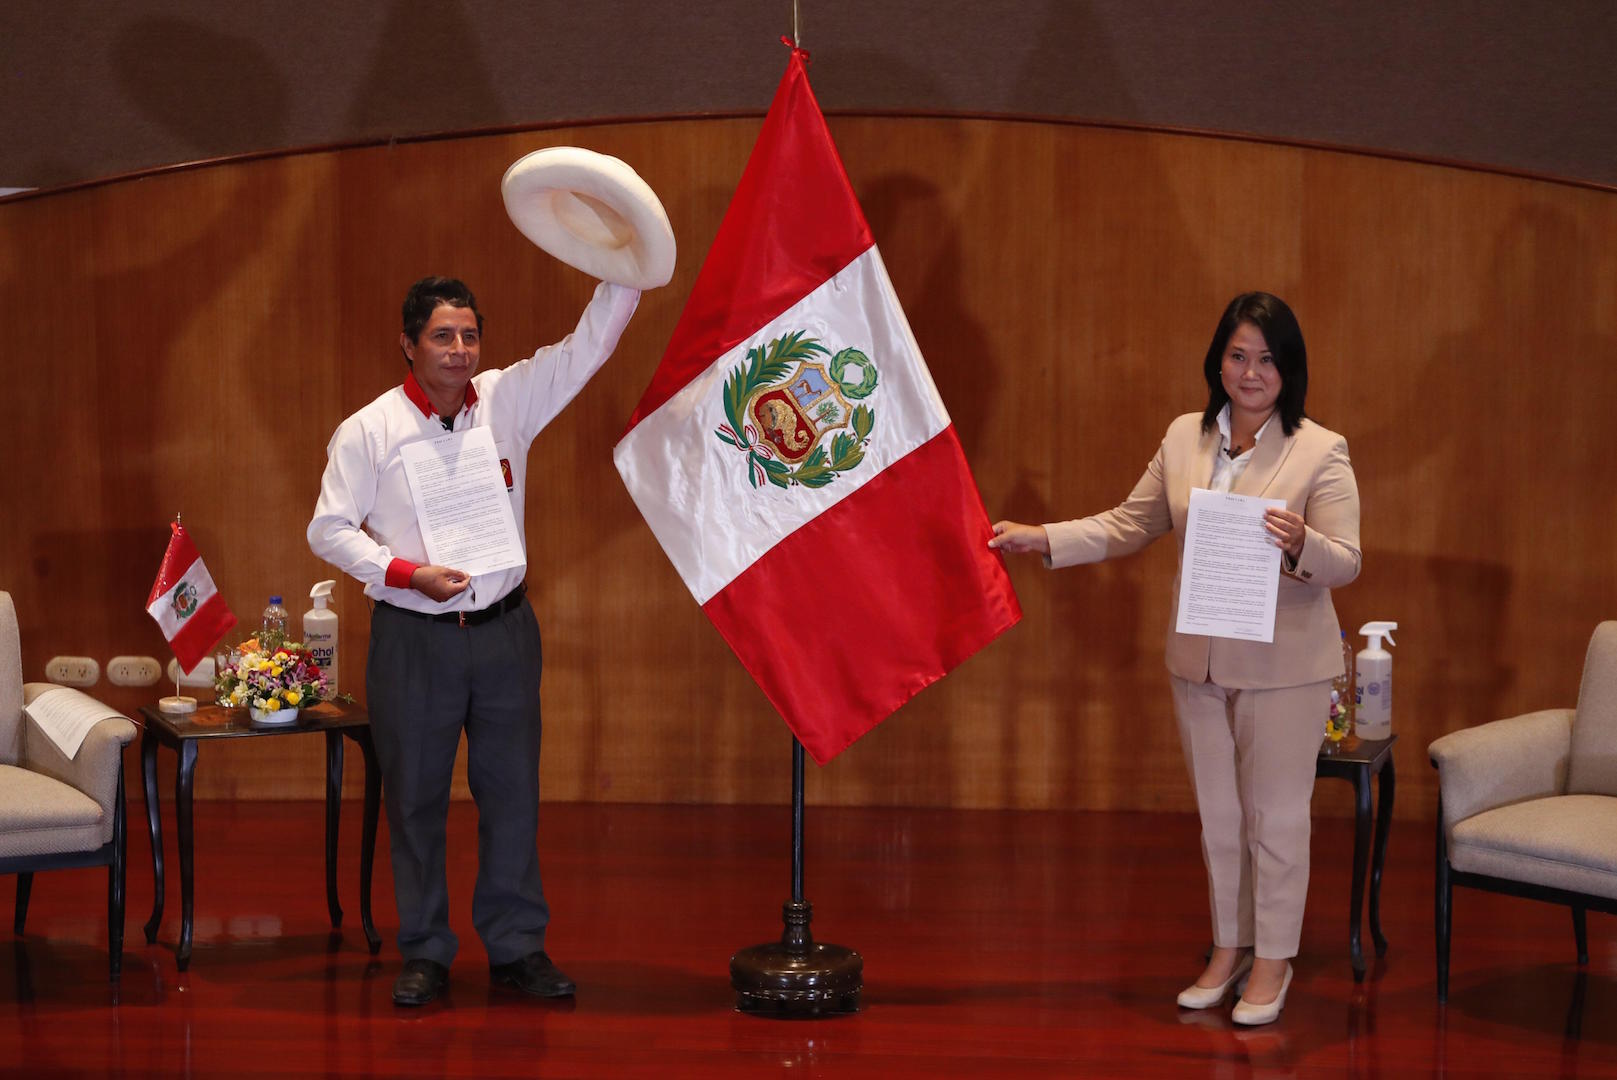 Castillo e Fujimori no Peru durante eleições com bandeira